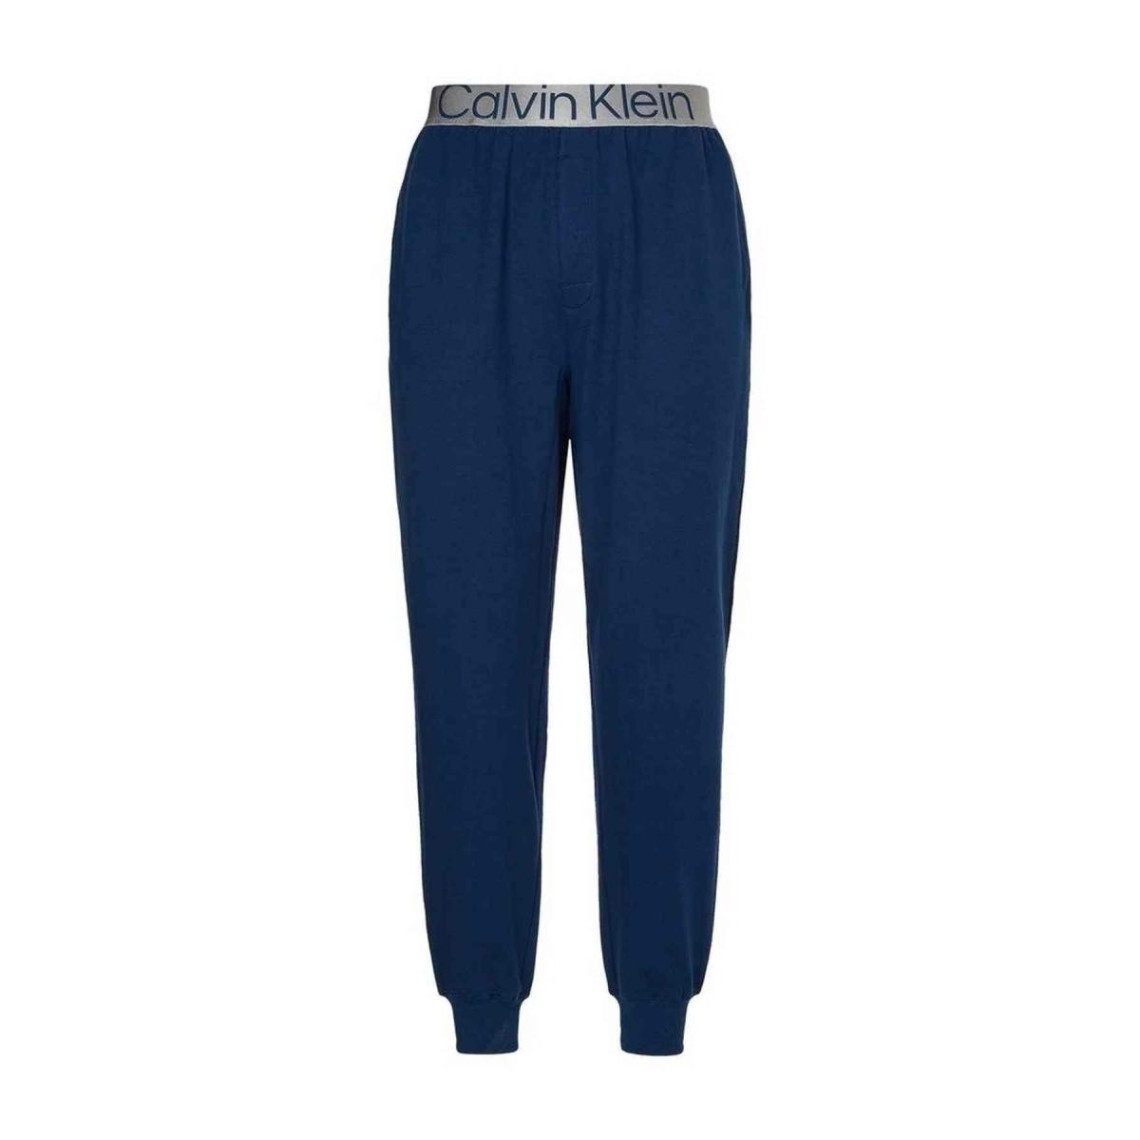 Pantalon jogging Homme - Bleu Calvin Klein Underwear en coton